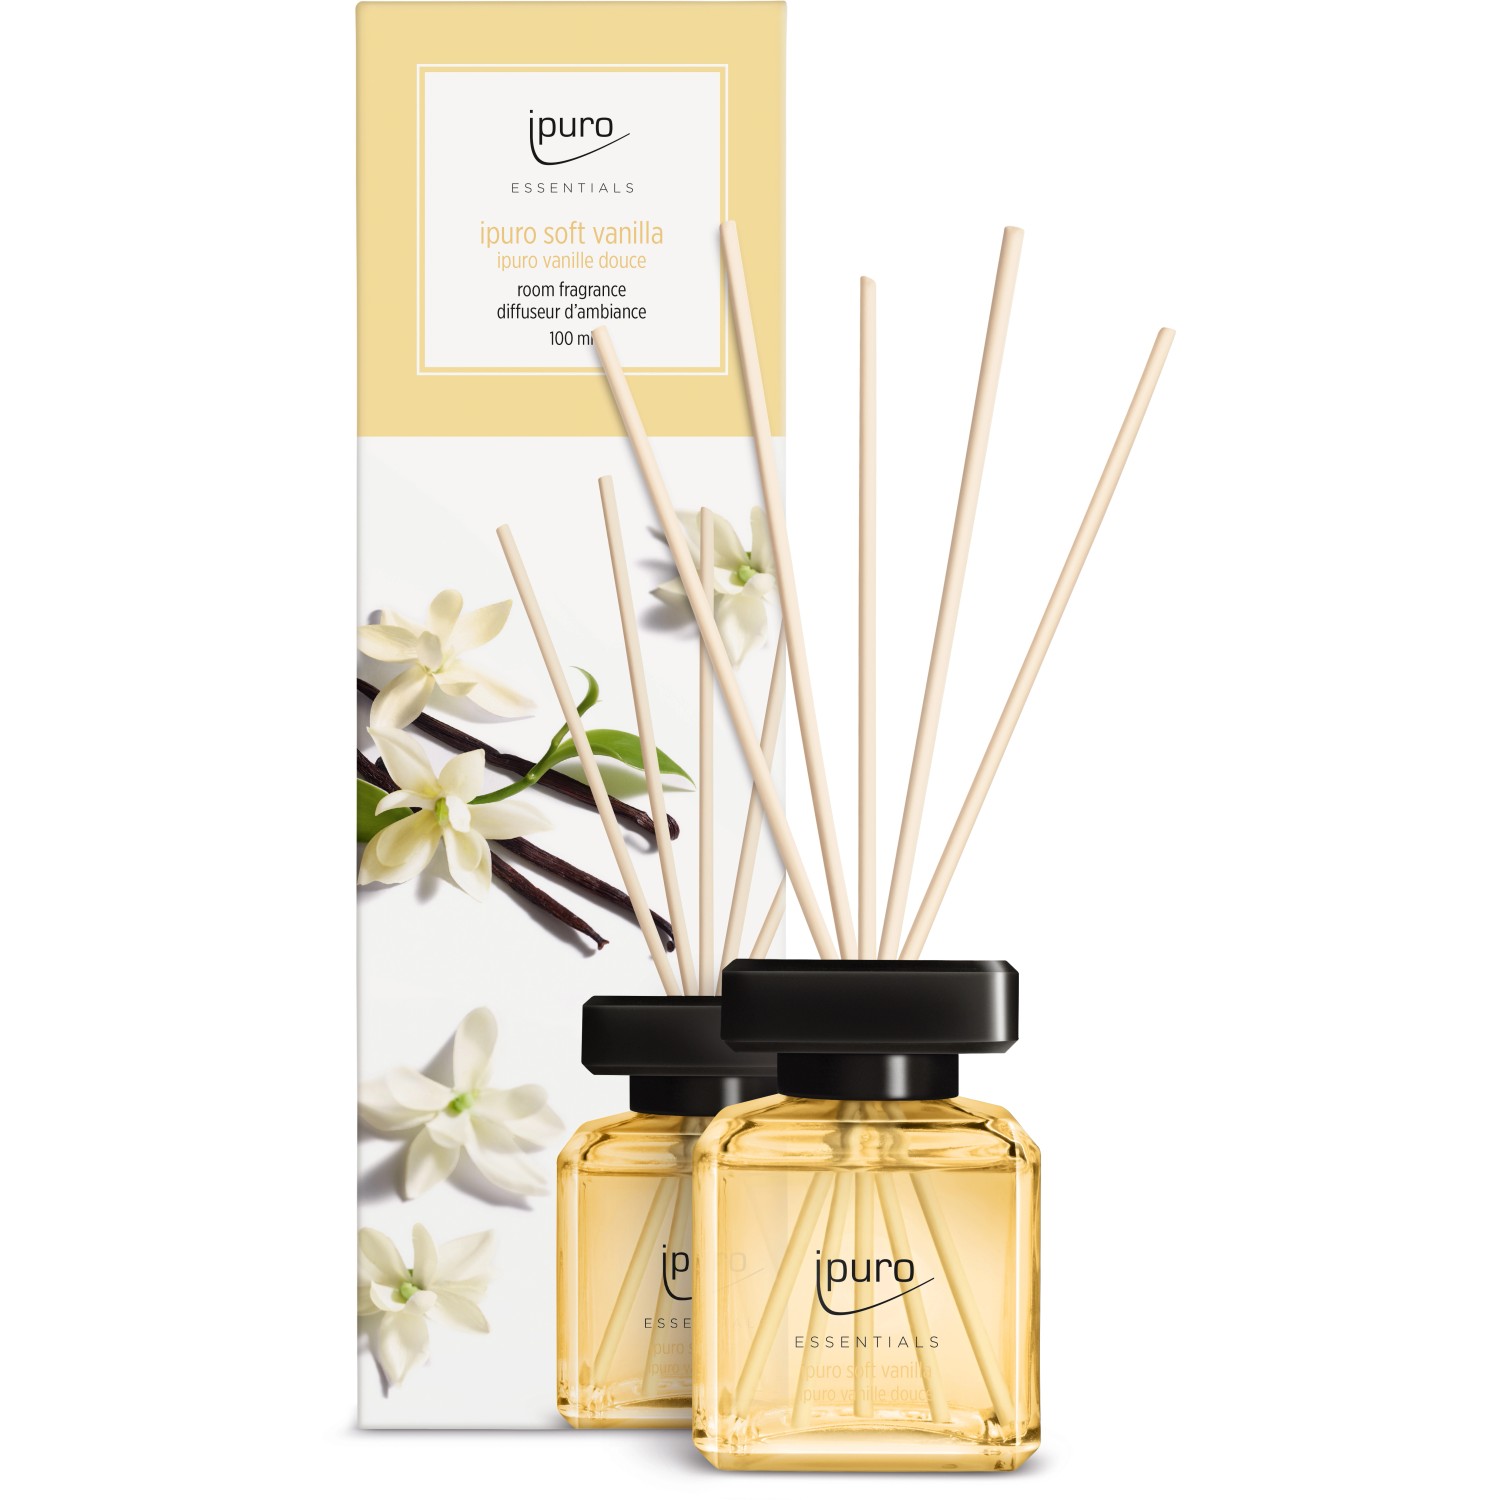 Ipuro Raumduft Essentials Vanilla Traum 50 ml kaufen bei OBI